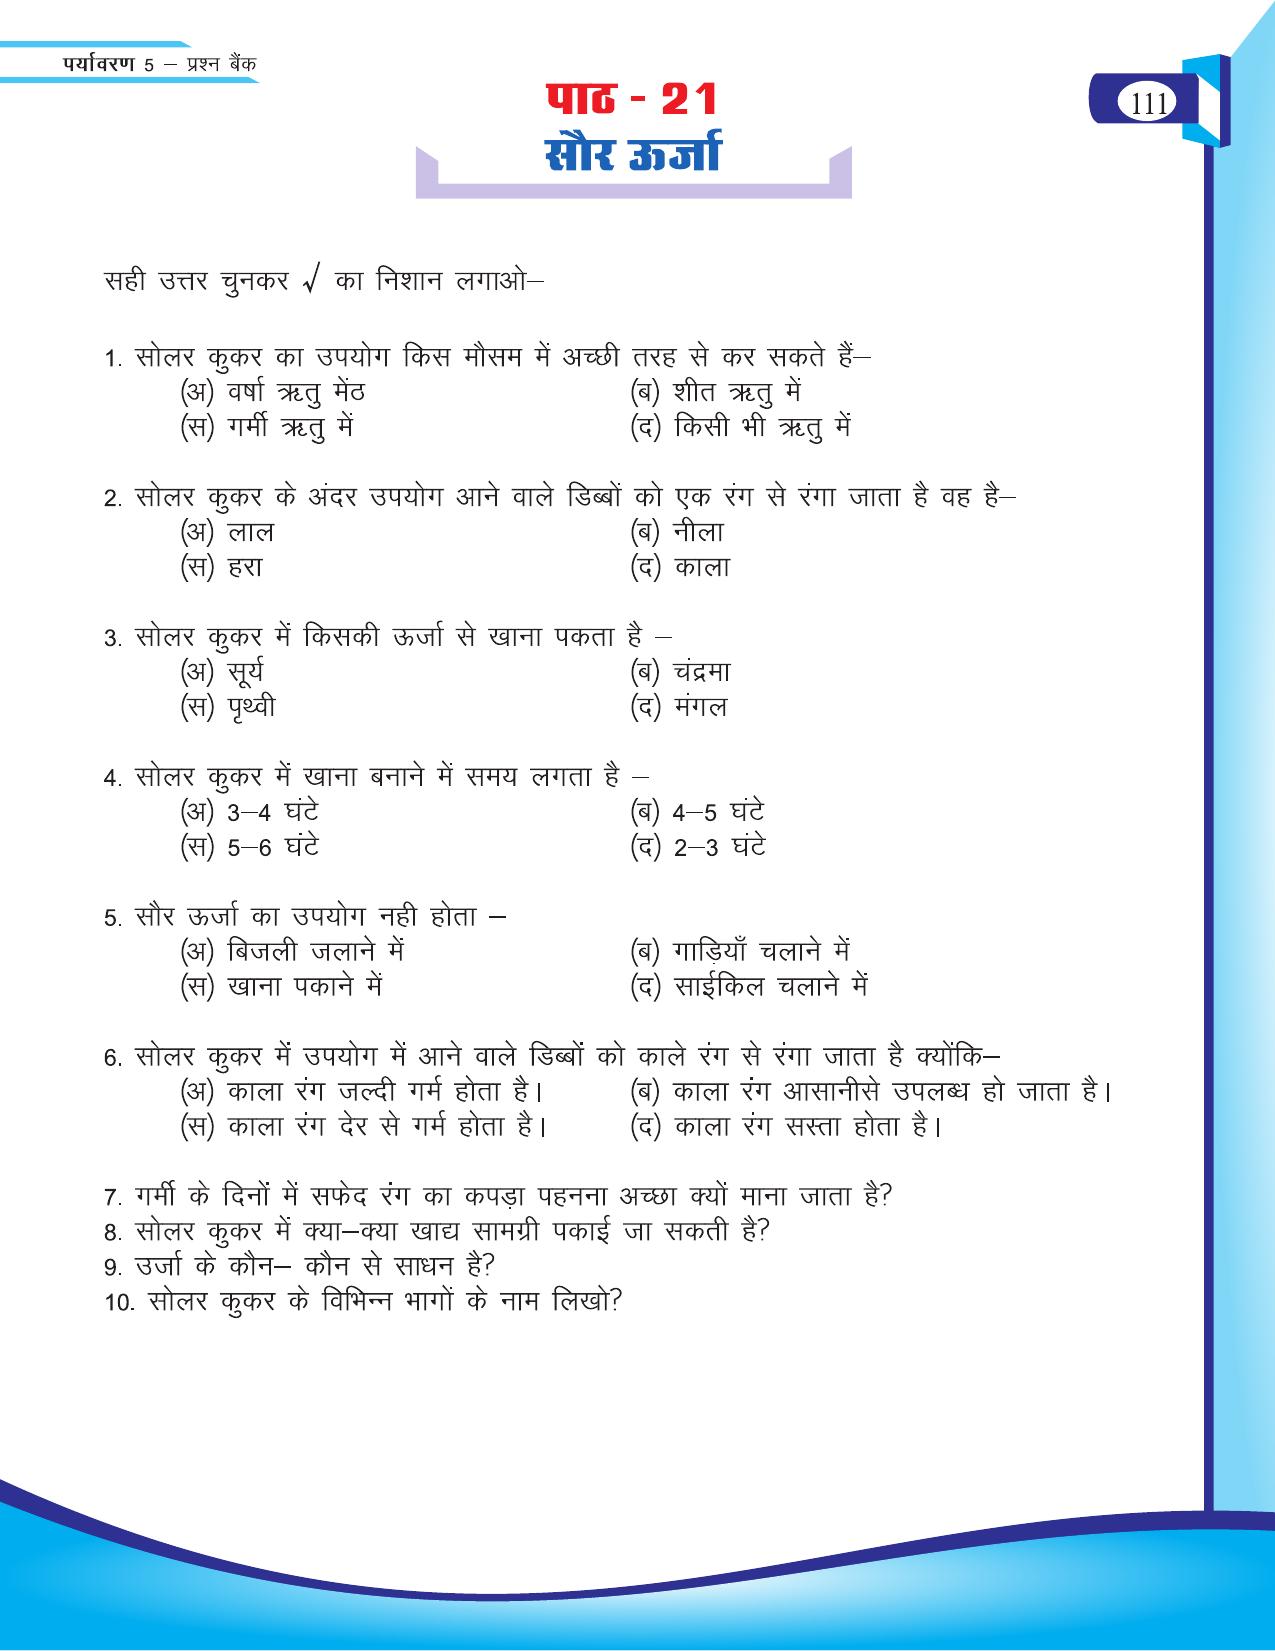 Chhattisgarh Board Class 5 EVS Question Bank 2015-16 - Page 37